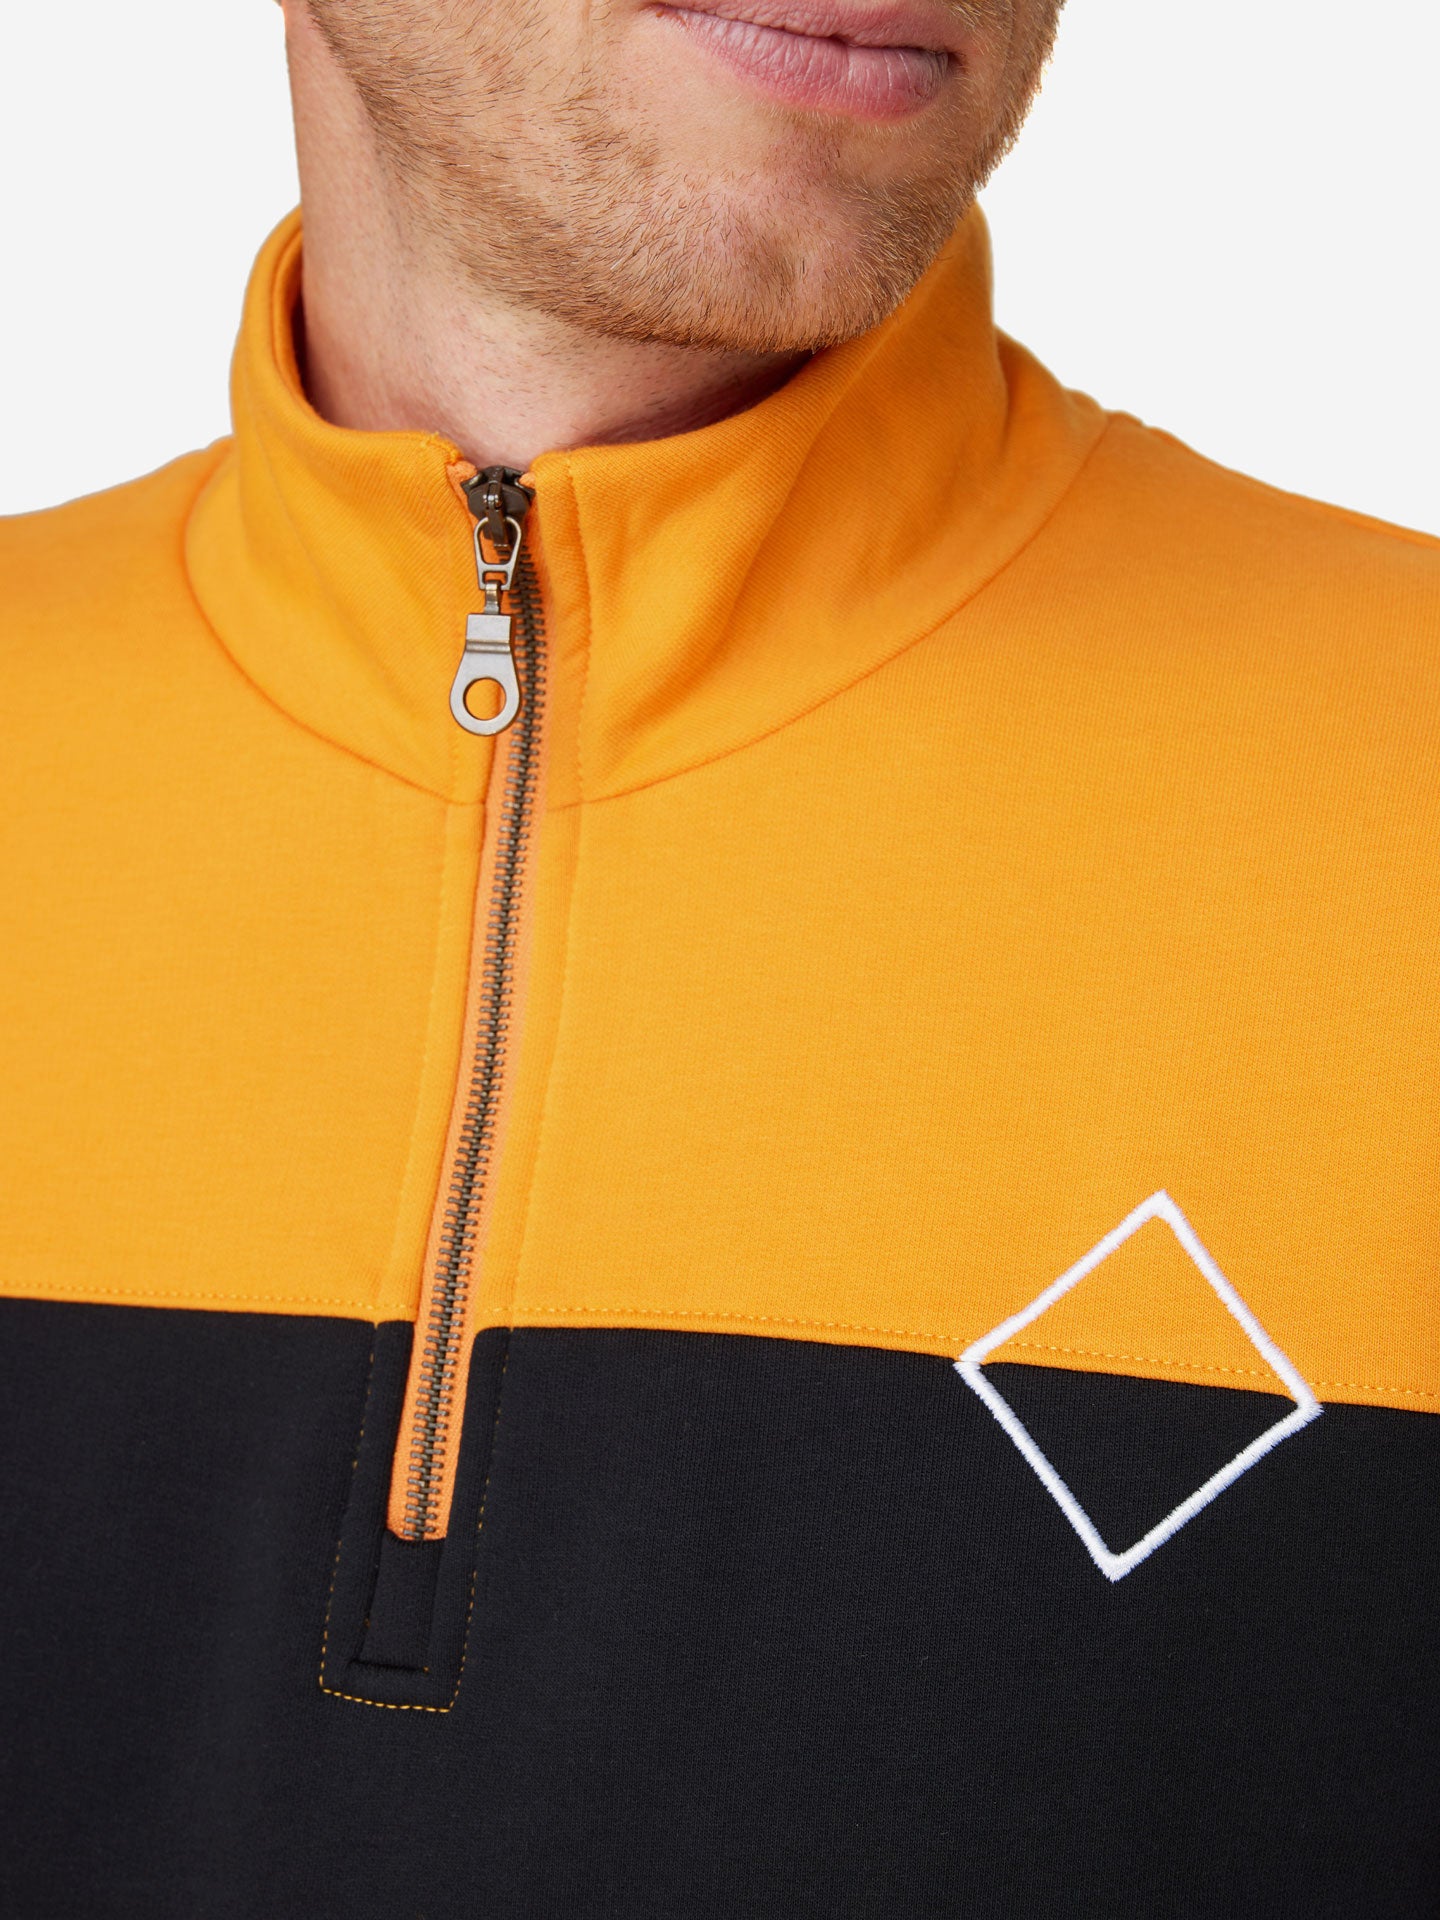 Molteni - Half Zipper - Sweatshirt - La Machine Cycle Club